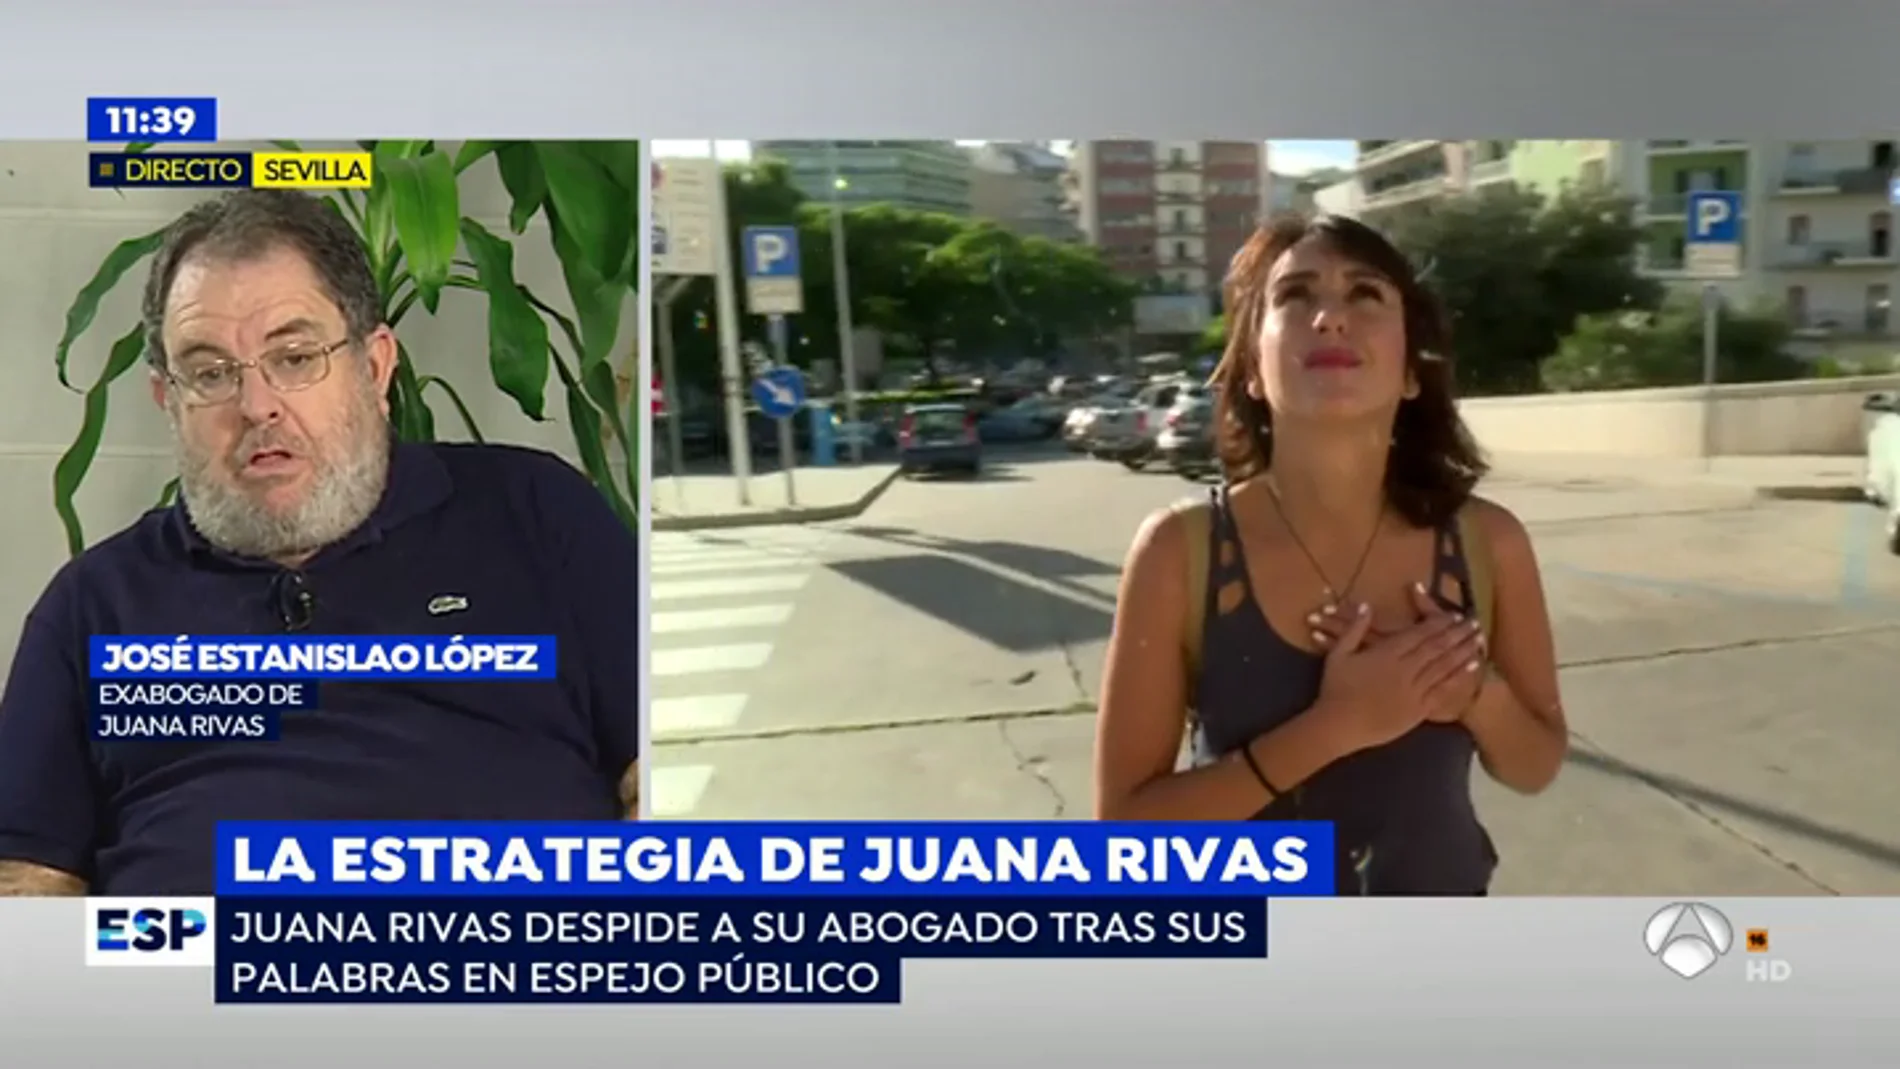 Juana Rivas despide a su abogado tras sus declaraciones en 'Espejo Público': "La confianza se rompió cuando le aconsejé entregar a los niños"